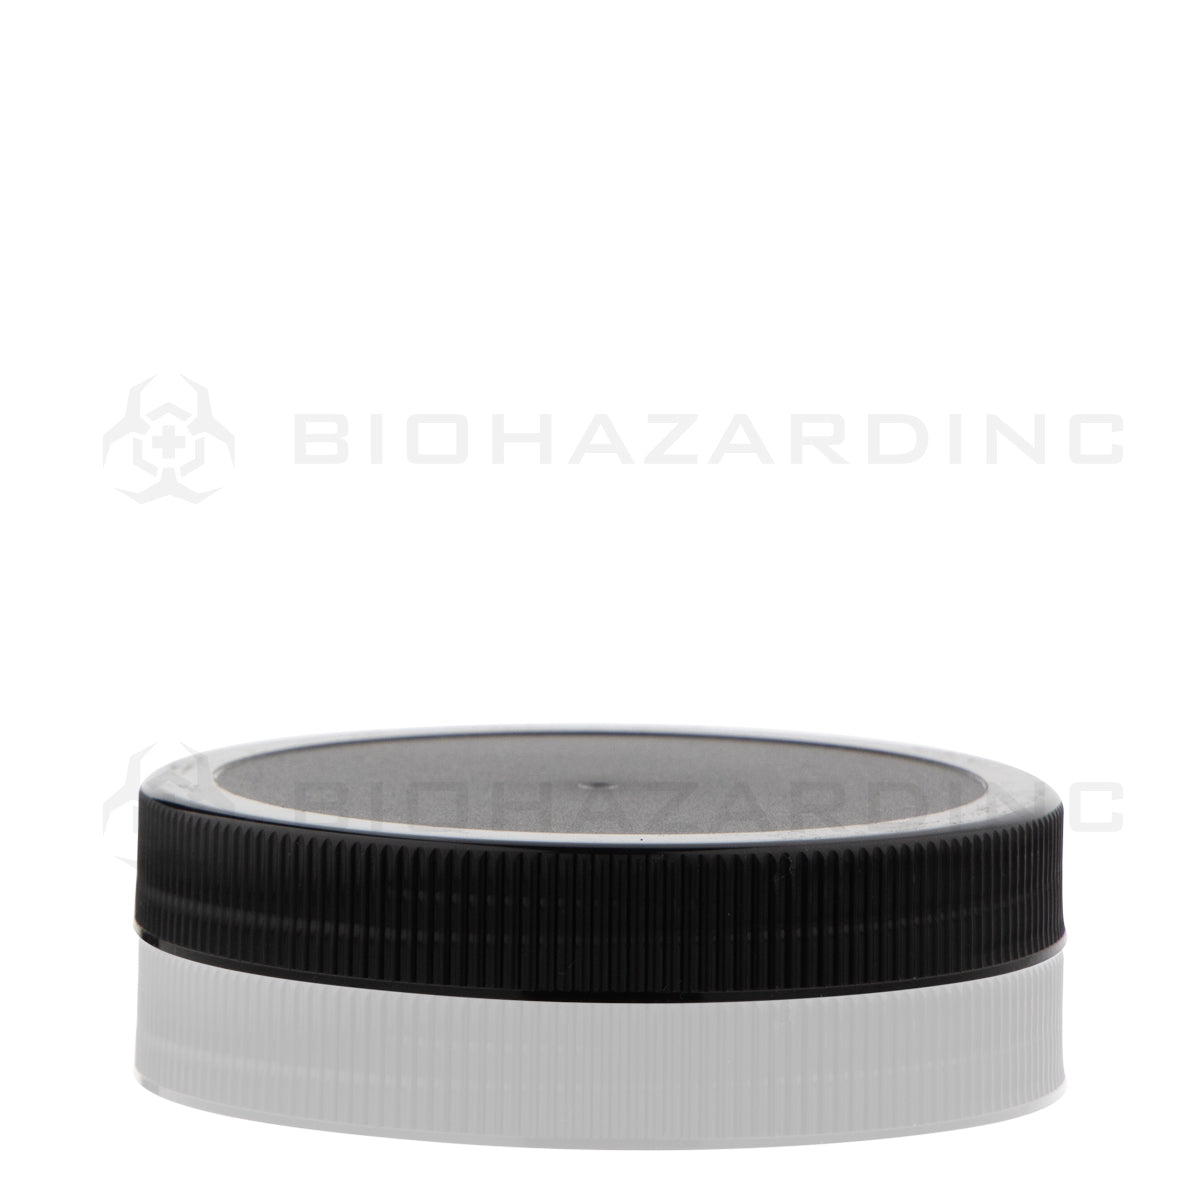 Plastic Cap | Ribbed Plastic Caps | 89mm - Black Cap Biohazard Inc   